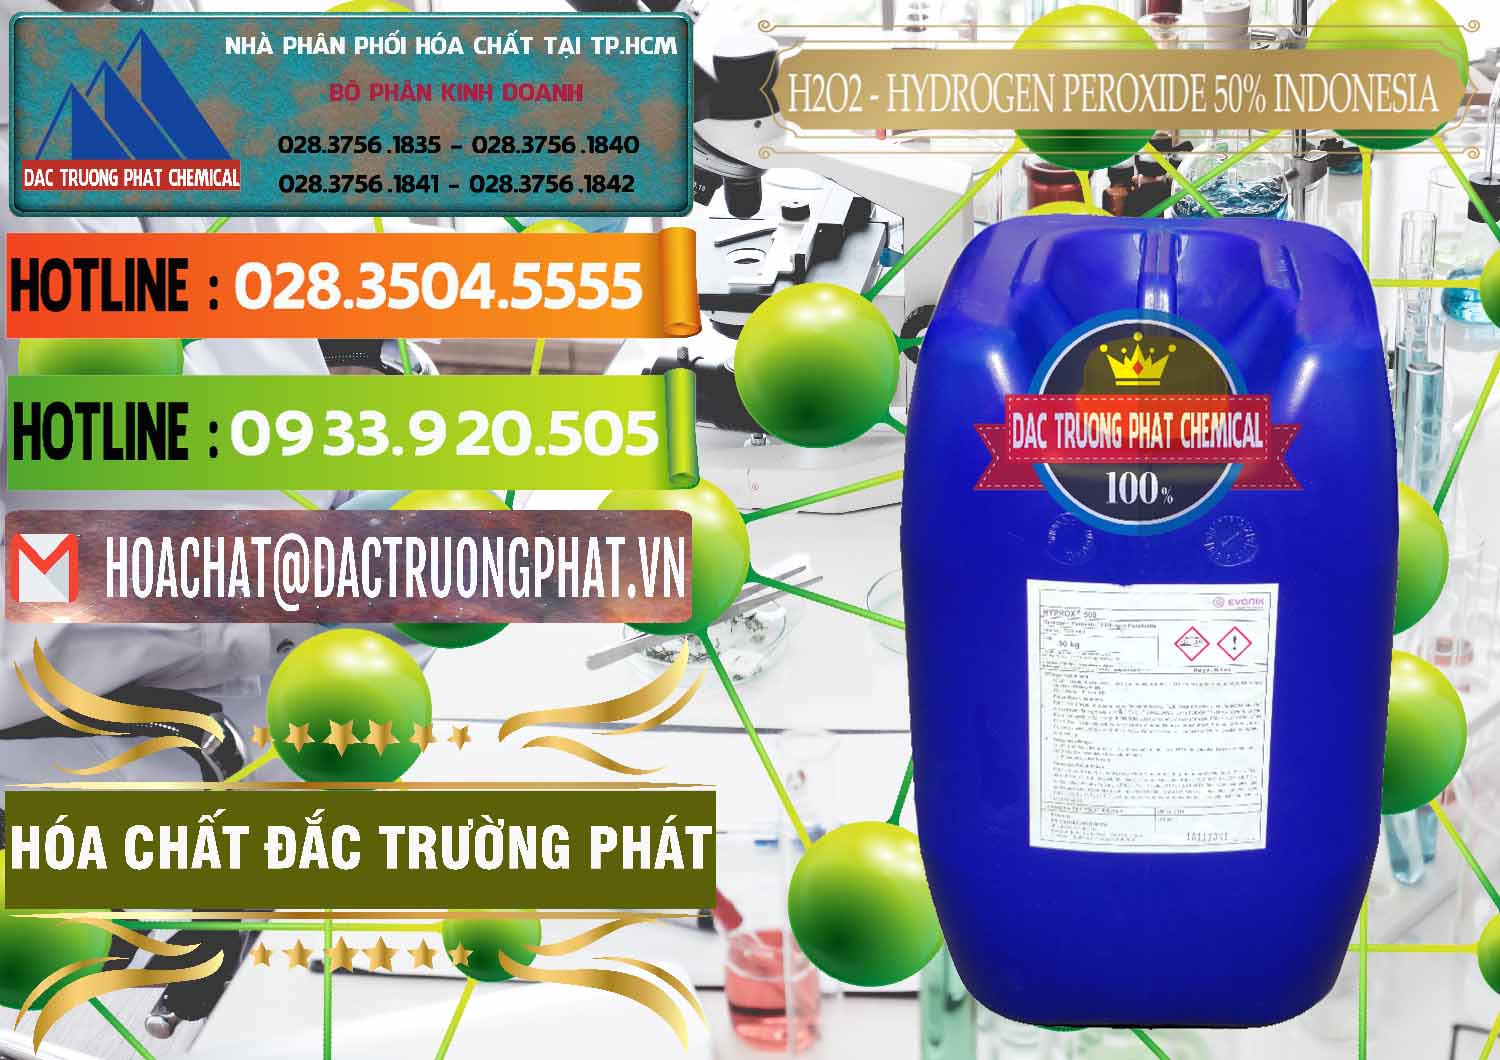 Công ty nhập khẩu & bán H2O2 - Hydrogen Peroxide 50% Evonik Indonesia - 0070 - Nhà cung cấp & phân phối hóa chất tại TP.HCM - cungcaphoachat.com.vn